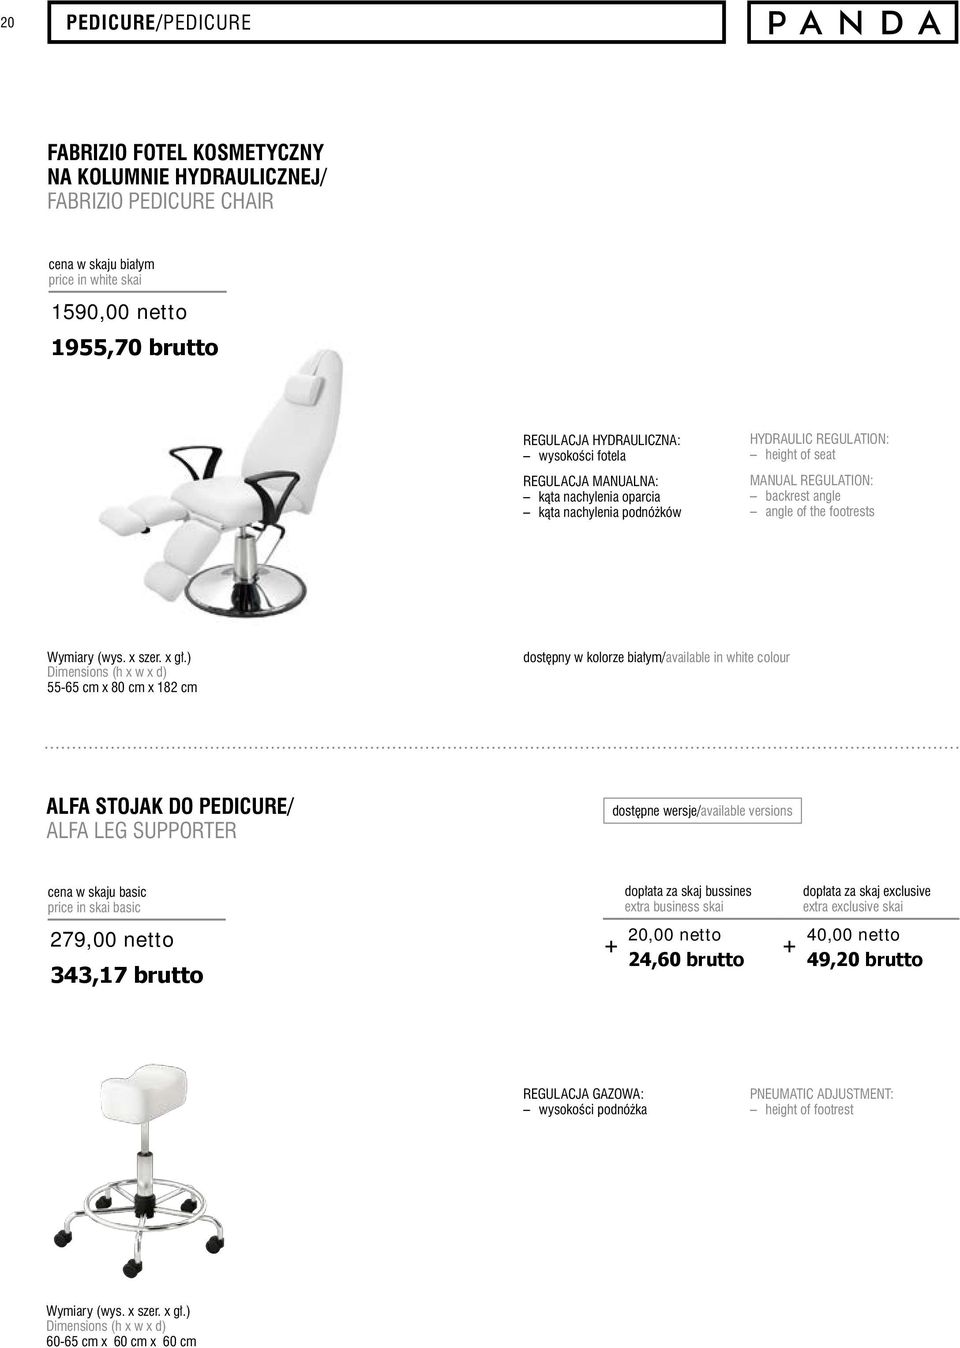 of the footrests 55-65 cm x 80 cm x 182 cm dostępny w kolorze białym/available in white colour ALFA STOJAK DO PEDICURE/ ALFA LEG SUPPORTER dopłata za skaj